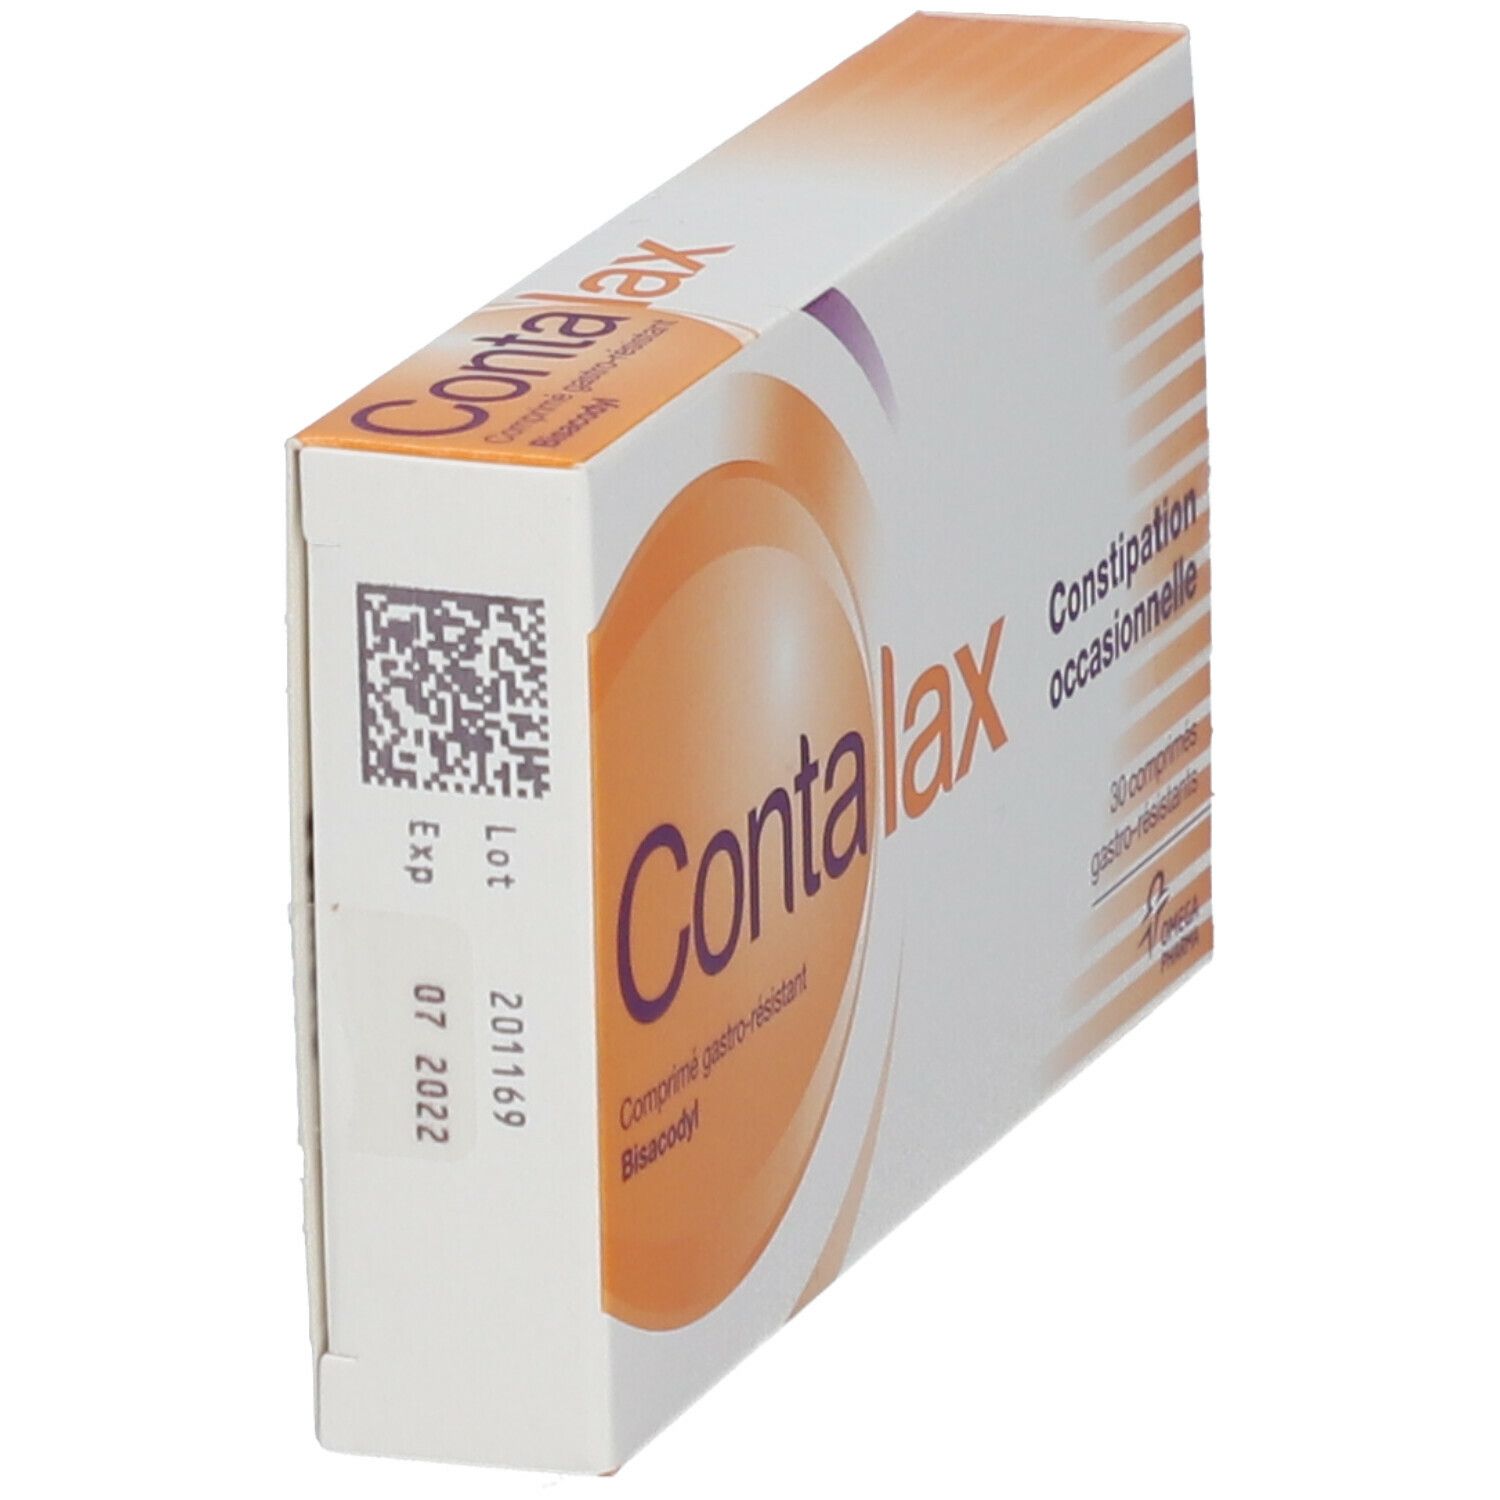 Contalax Laxatif Stimulant Constipation Occasionnelle 30 Comprimés